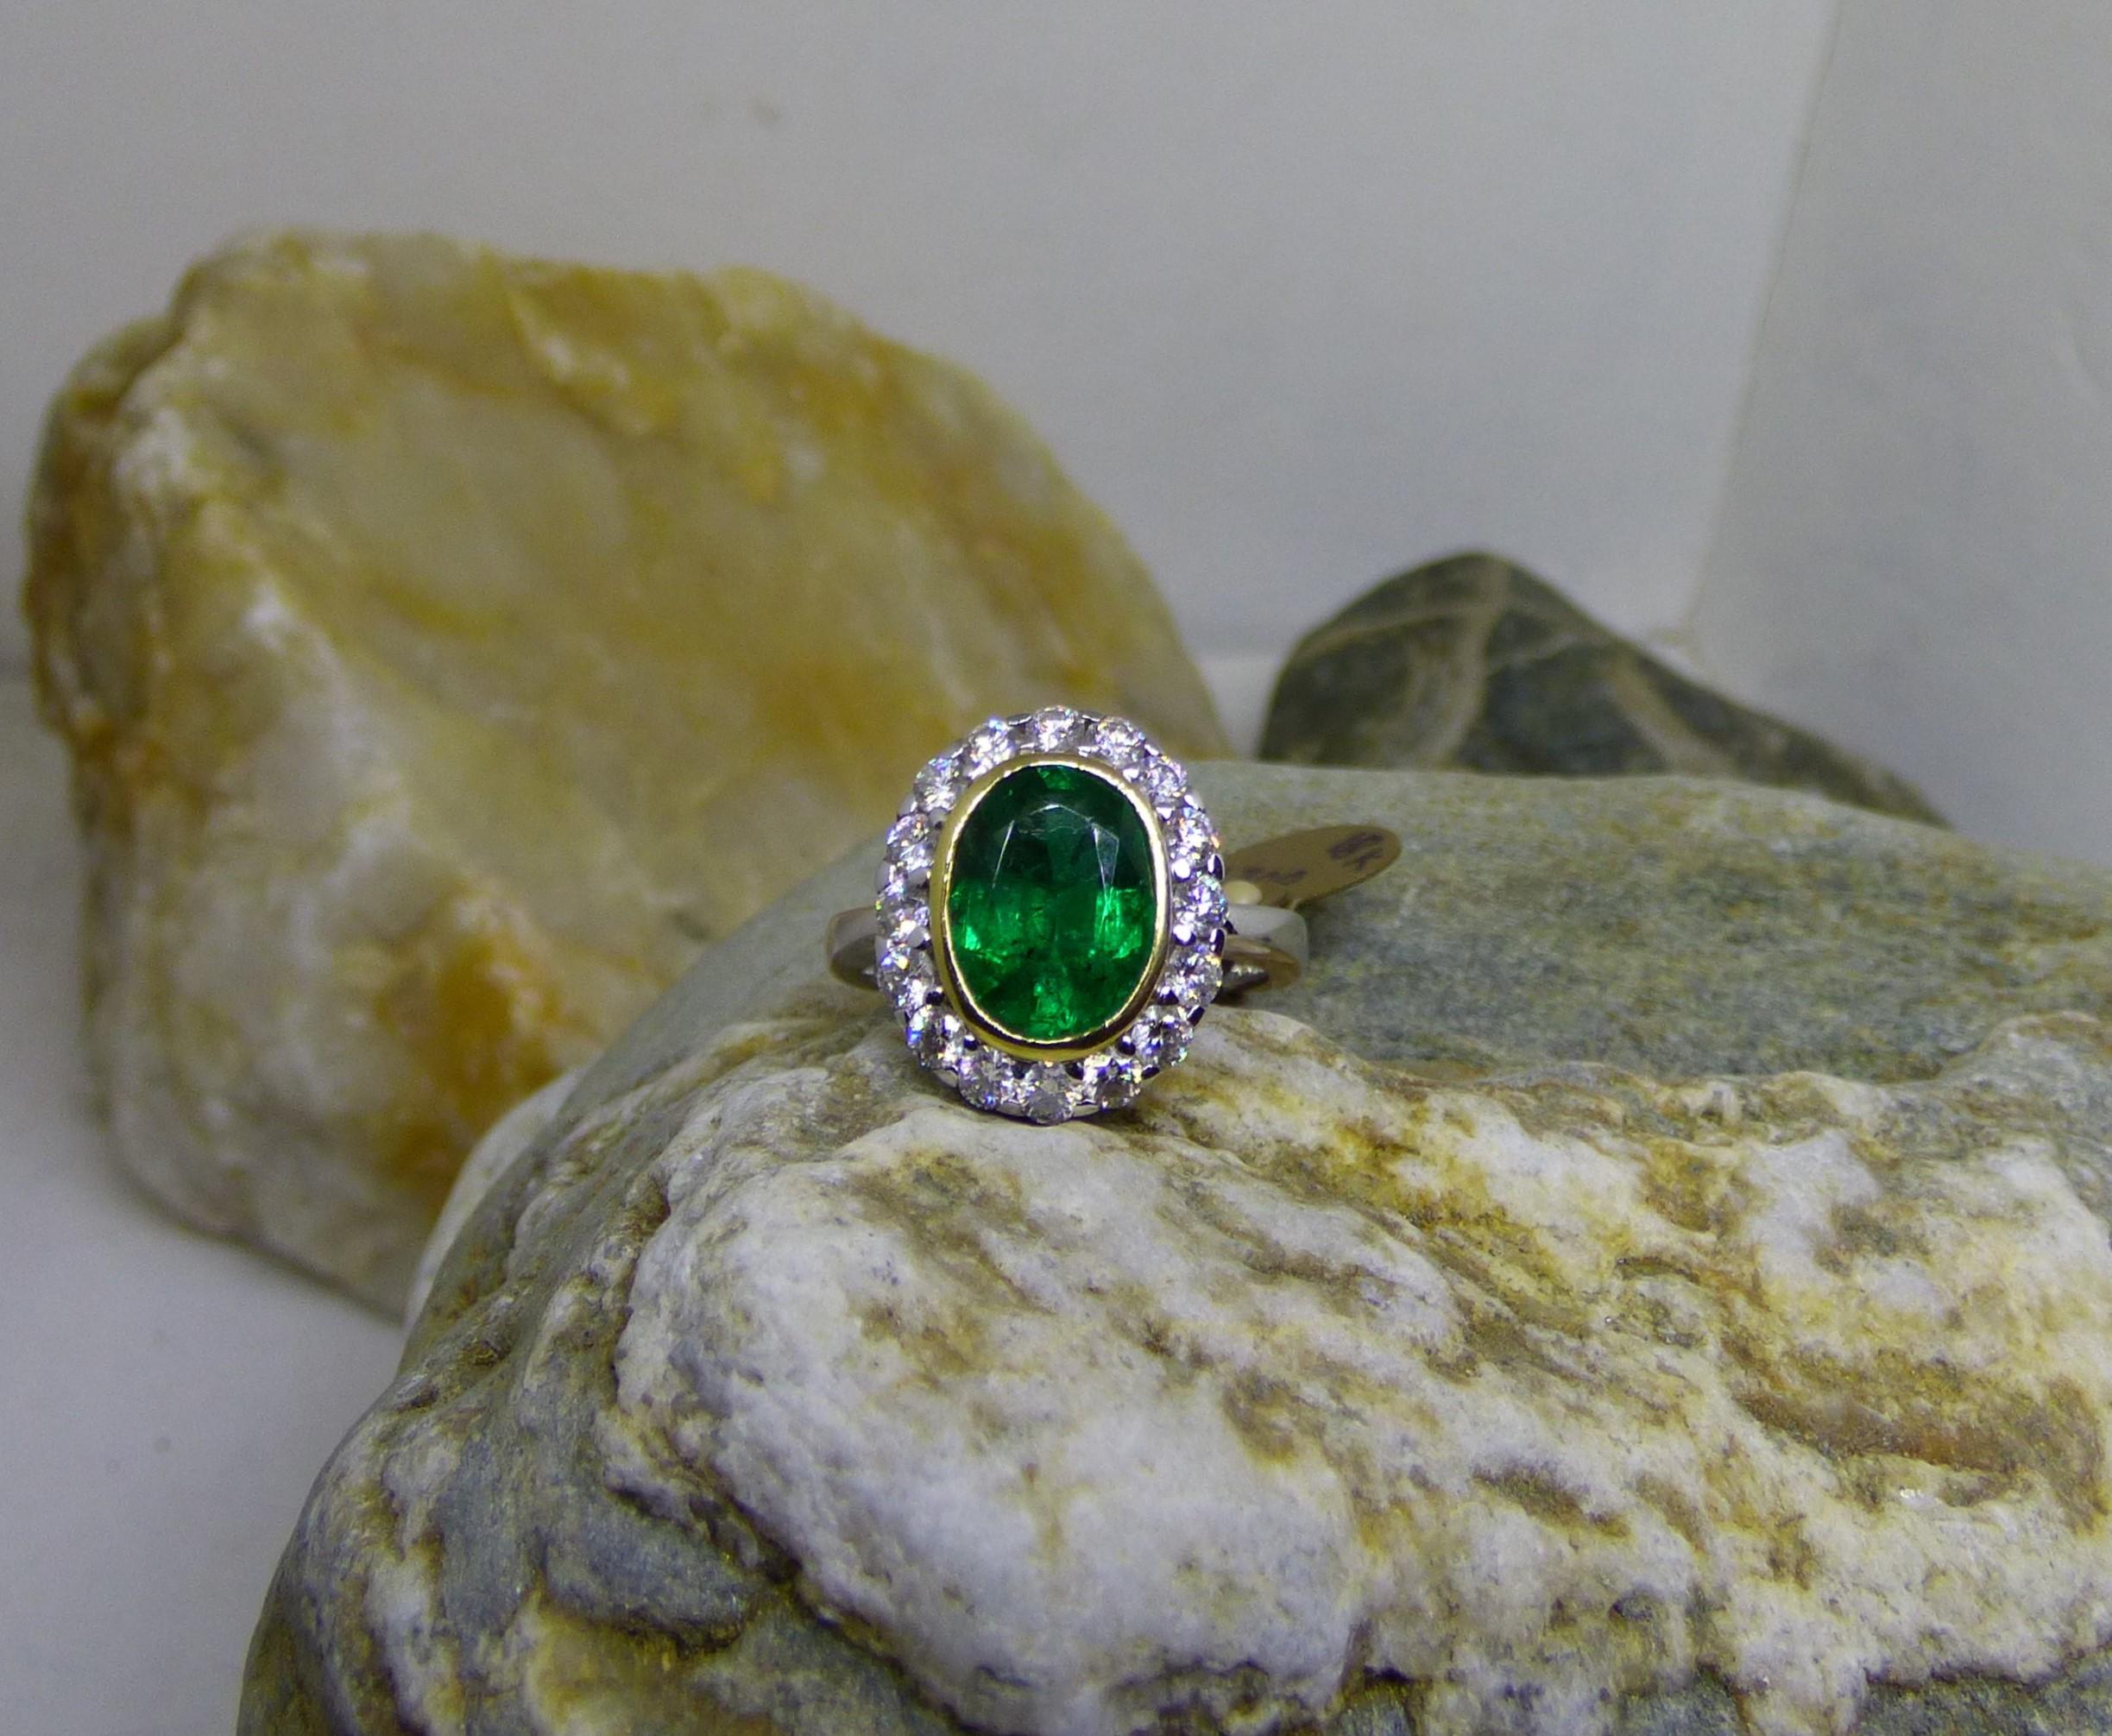 Ein leuchtender und farbenfroher ovaler Smaragd von 2,37 Karat ist der Mittelpunkt dieses Rings. Der 10 x 8 mm große Smaragd ist von 16 Diamanten mit einem Gesamtgewicht von 0,86 ct umgeben.  Die Gesamtgröße der Vorderseite des Rings beträgt